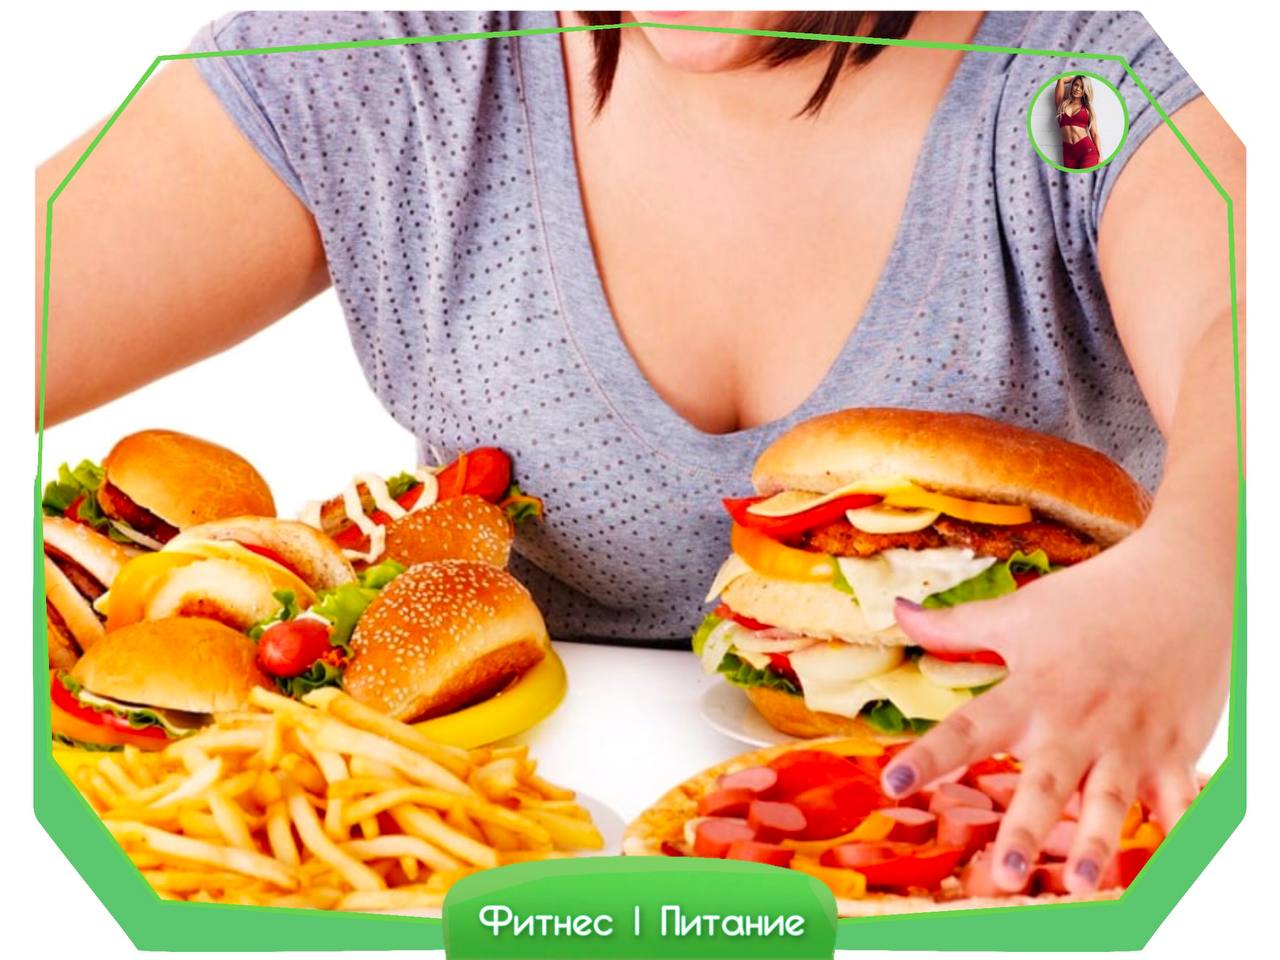 Ожирение переедание. Нерациональное питание. Компульсивное переедание. Нарушение питания. Неправильное питание и ожирение.